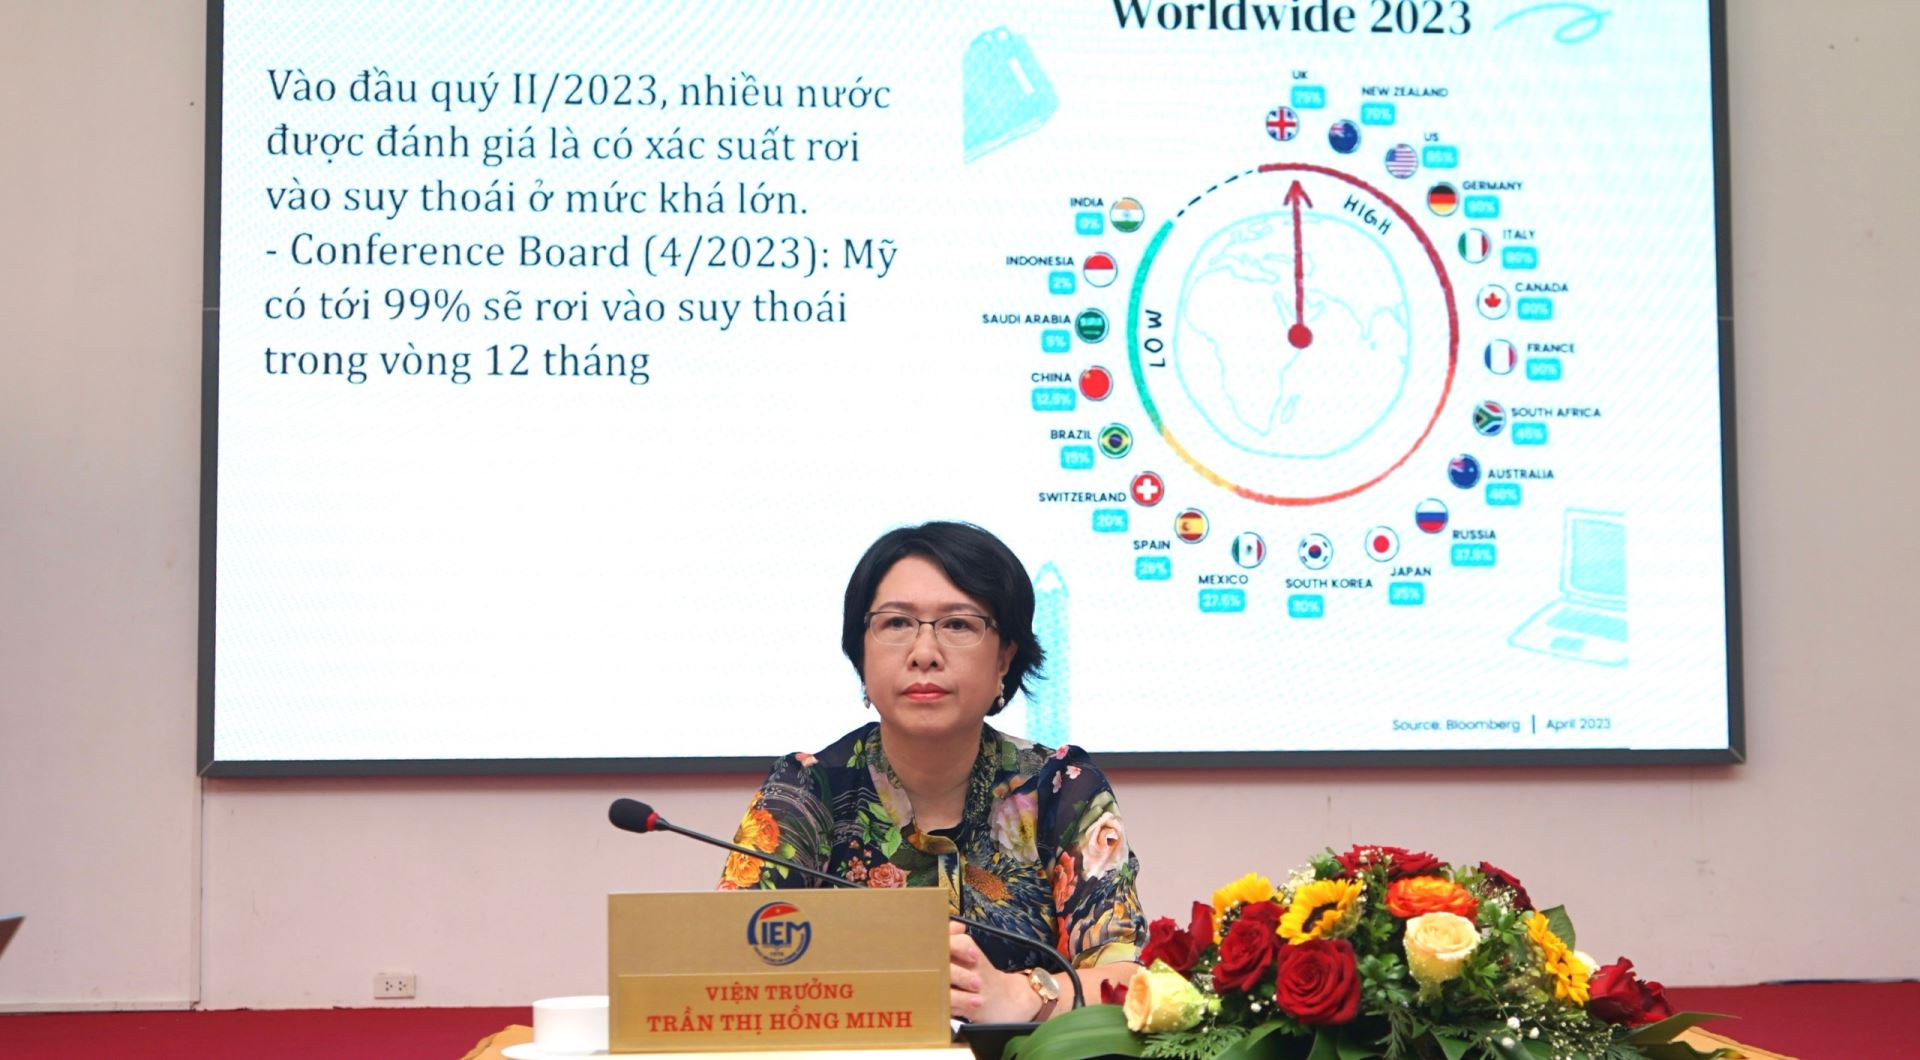 TS. Trần Thị Hồng Minh, Viện trưởng Viện Nghiên cứu quản lý kinh tế Trung ương chủ trì Hội thảo